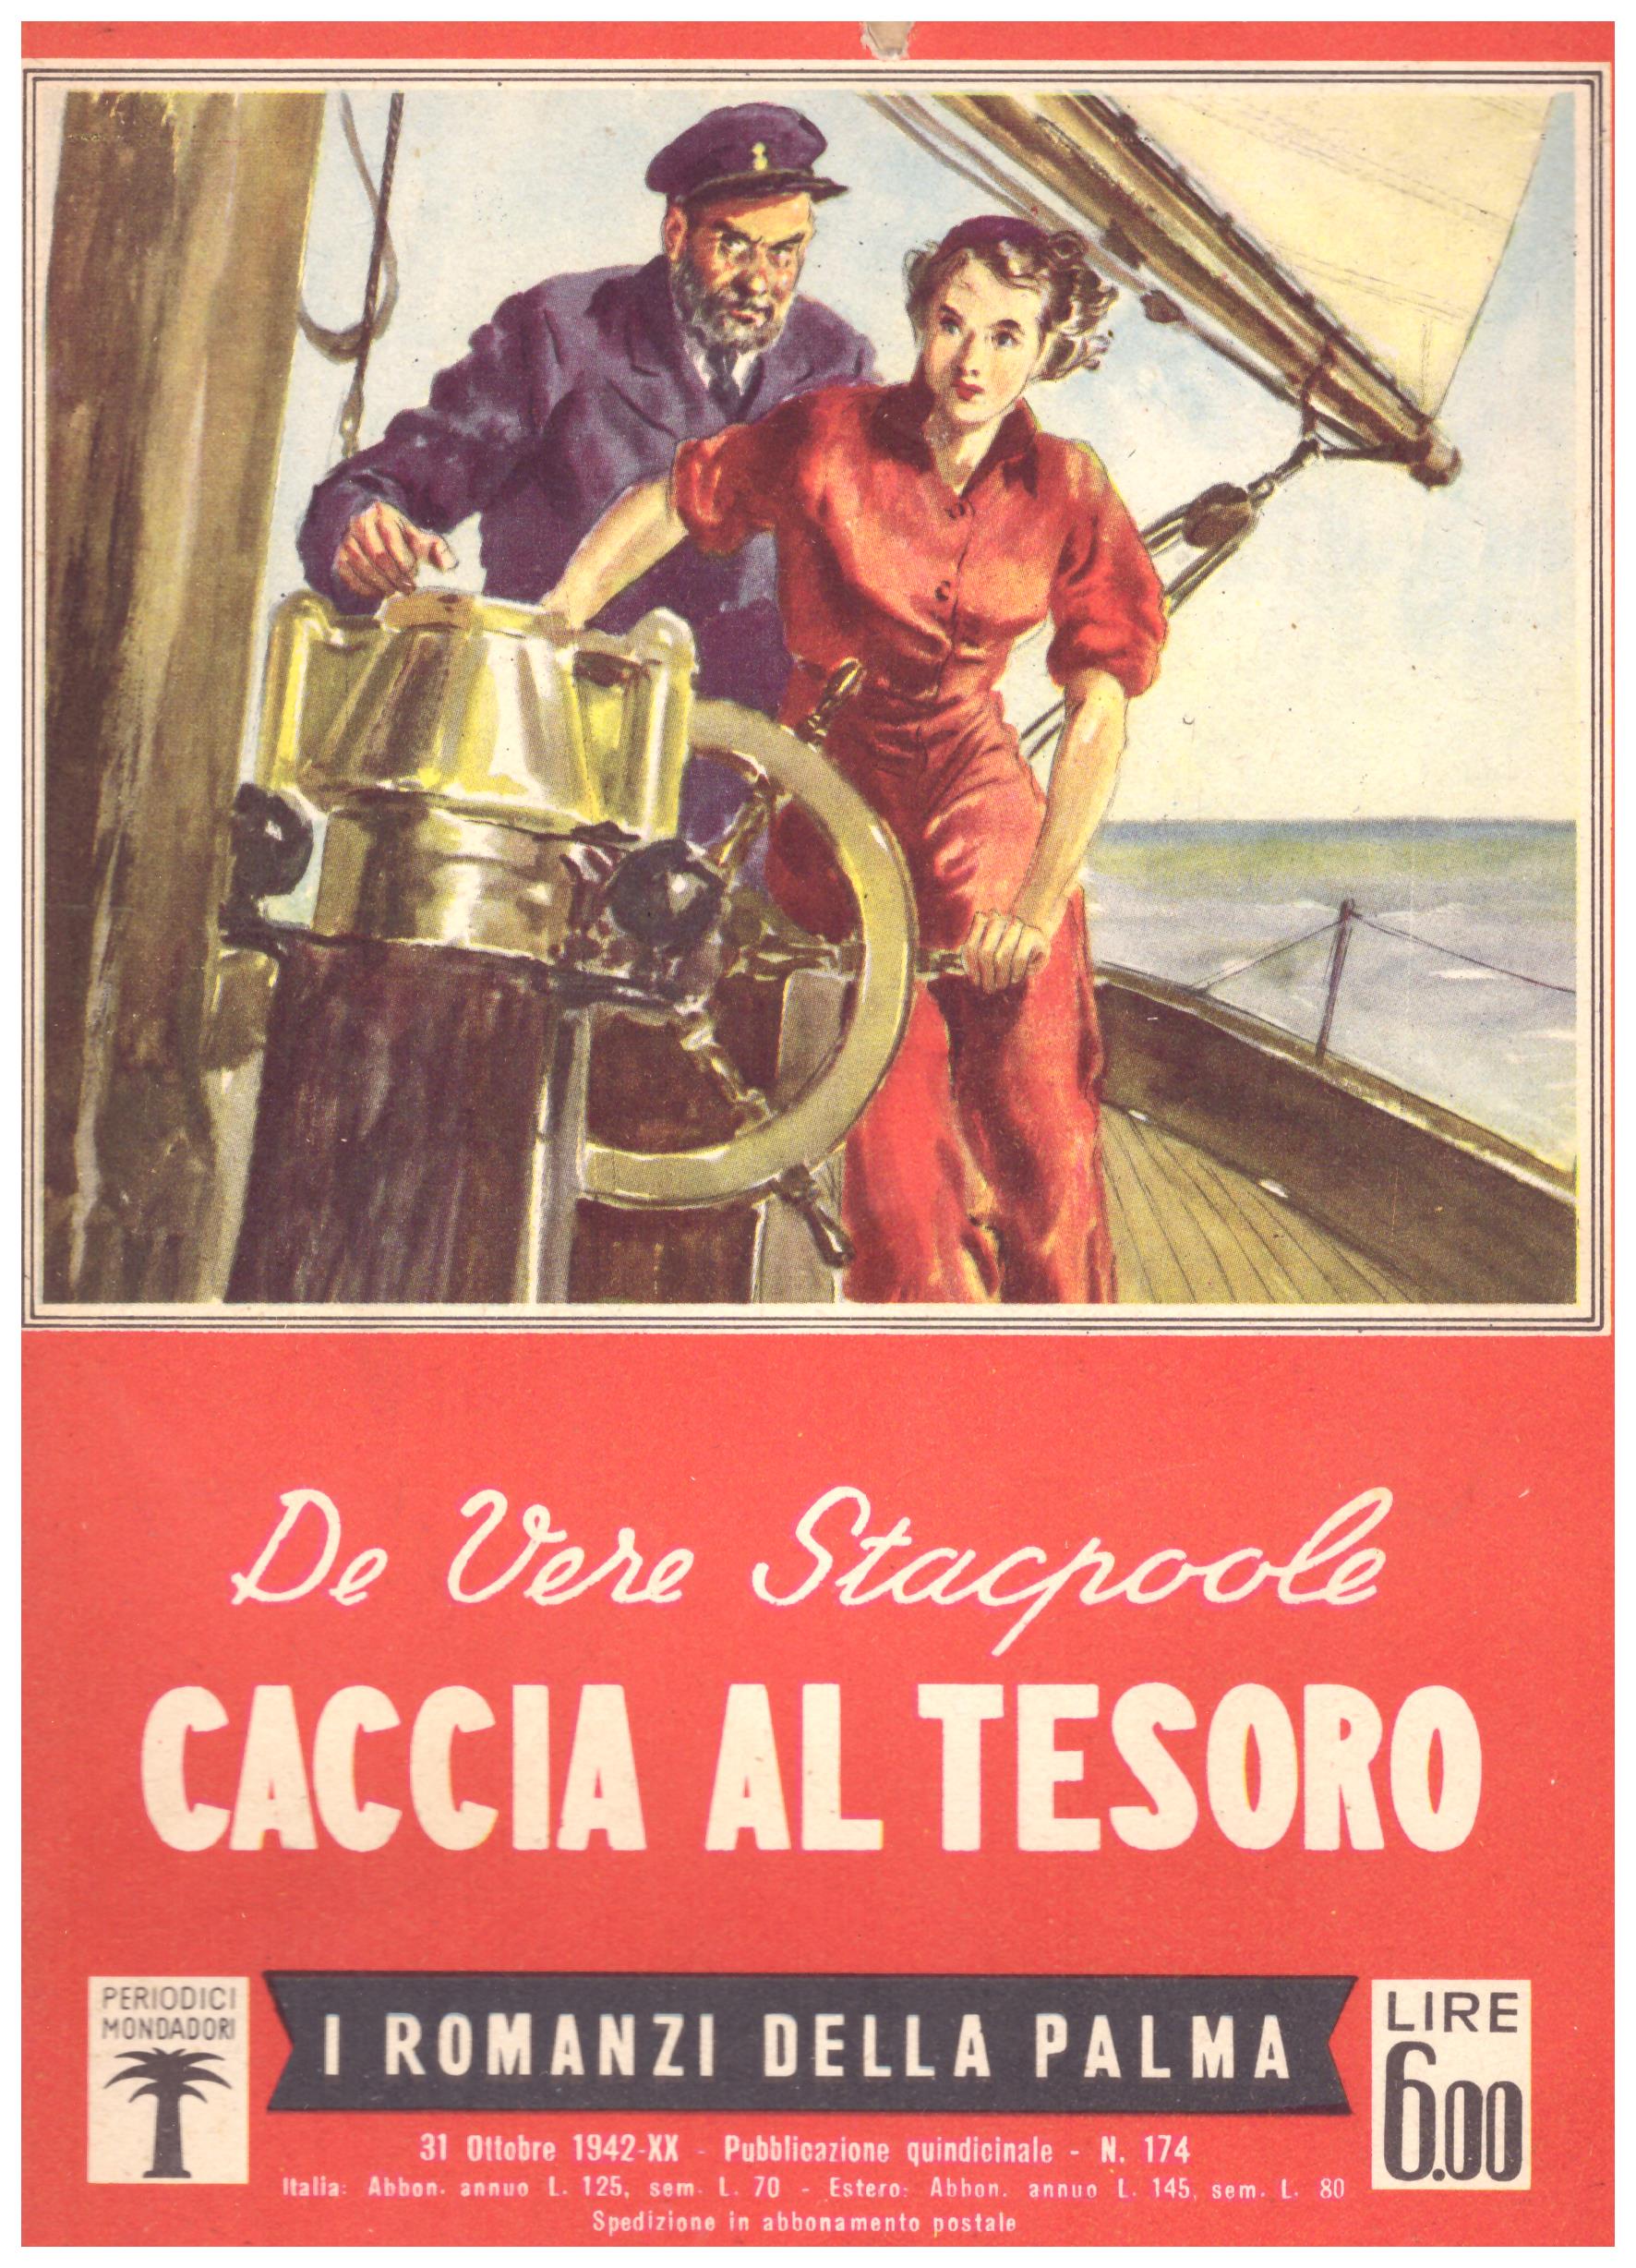 Titolo: I romanzi della palma,Caccia al tesoro Autore: De vere Stacpool Editore: periodici mondadori, 15 ottobre 1942